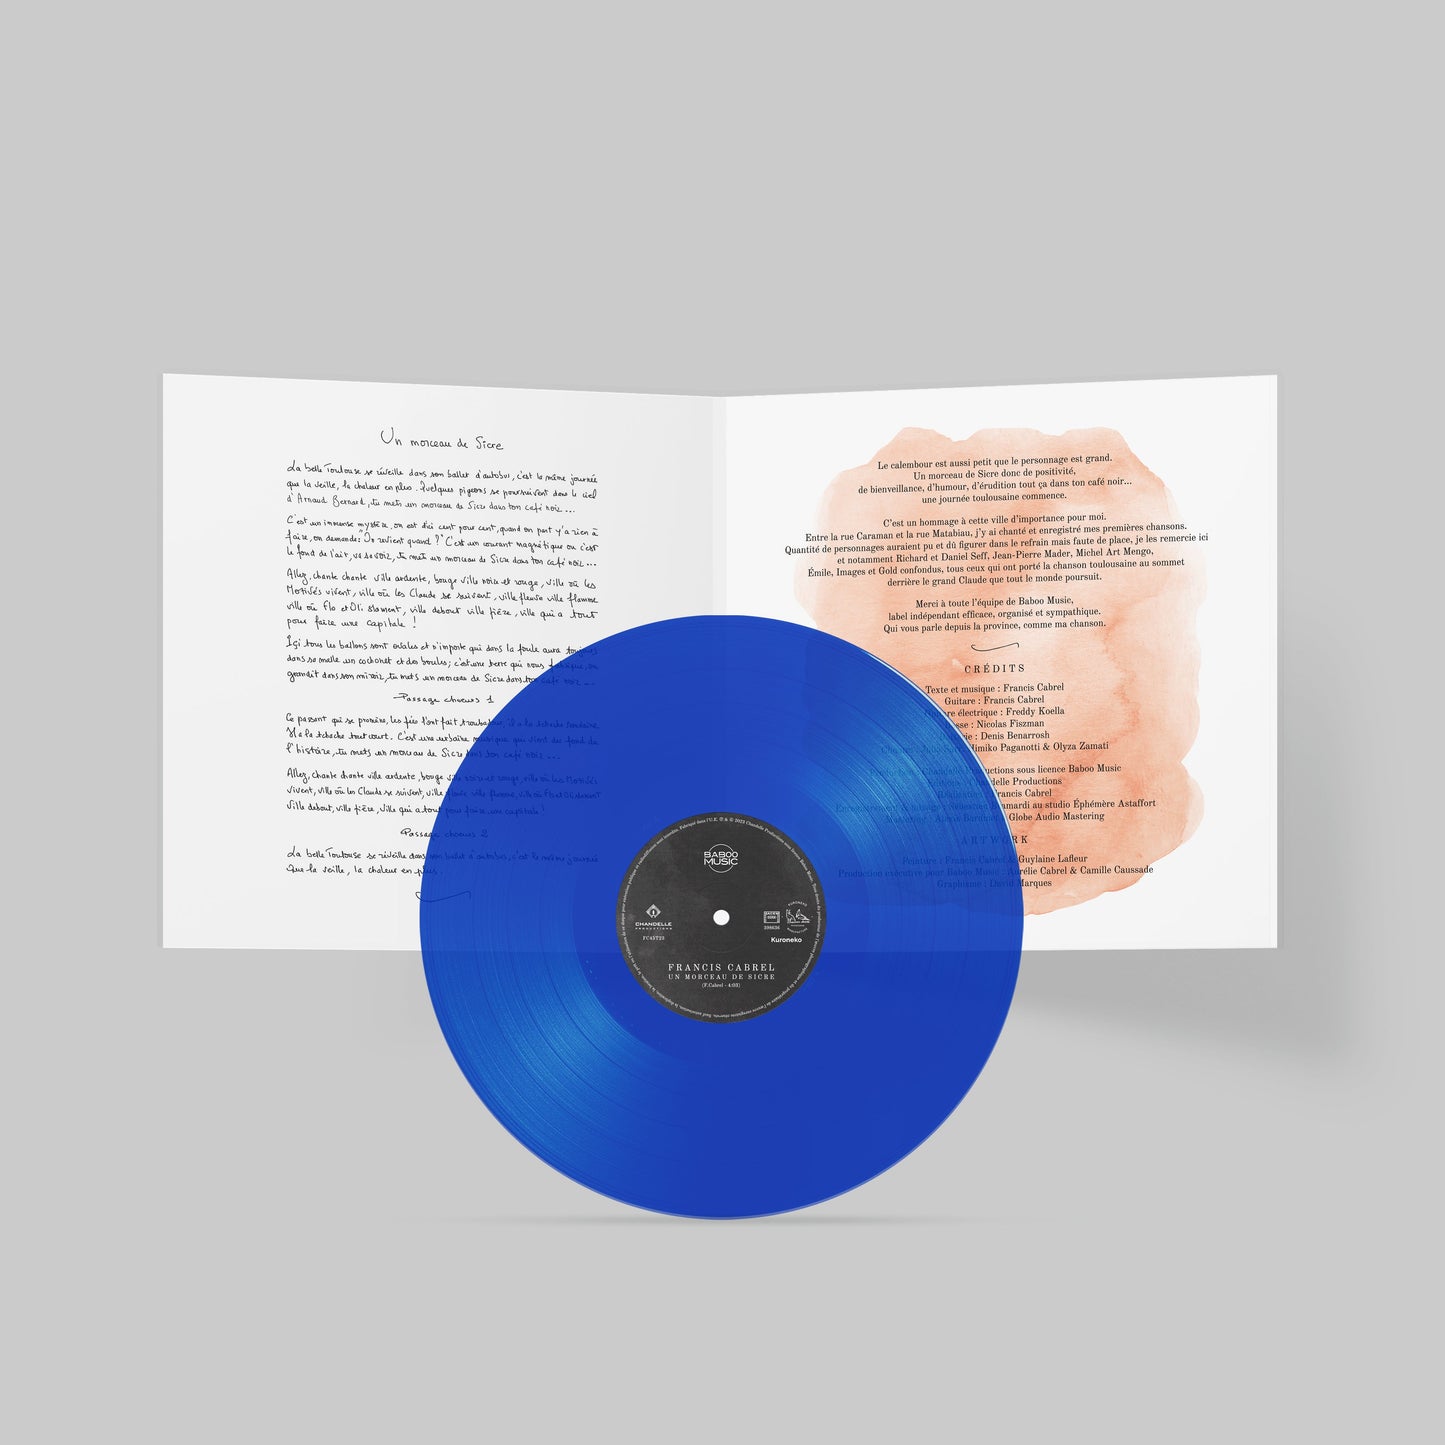 VERSION SIGNÉE Vinyle 45 T [Edition Limitée Spéciale Vinyle bleu océan] | Francis Cabrel "Un Morceau de Sicre"